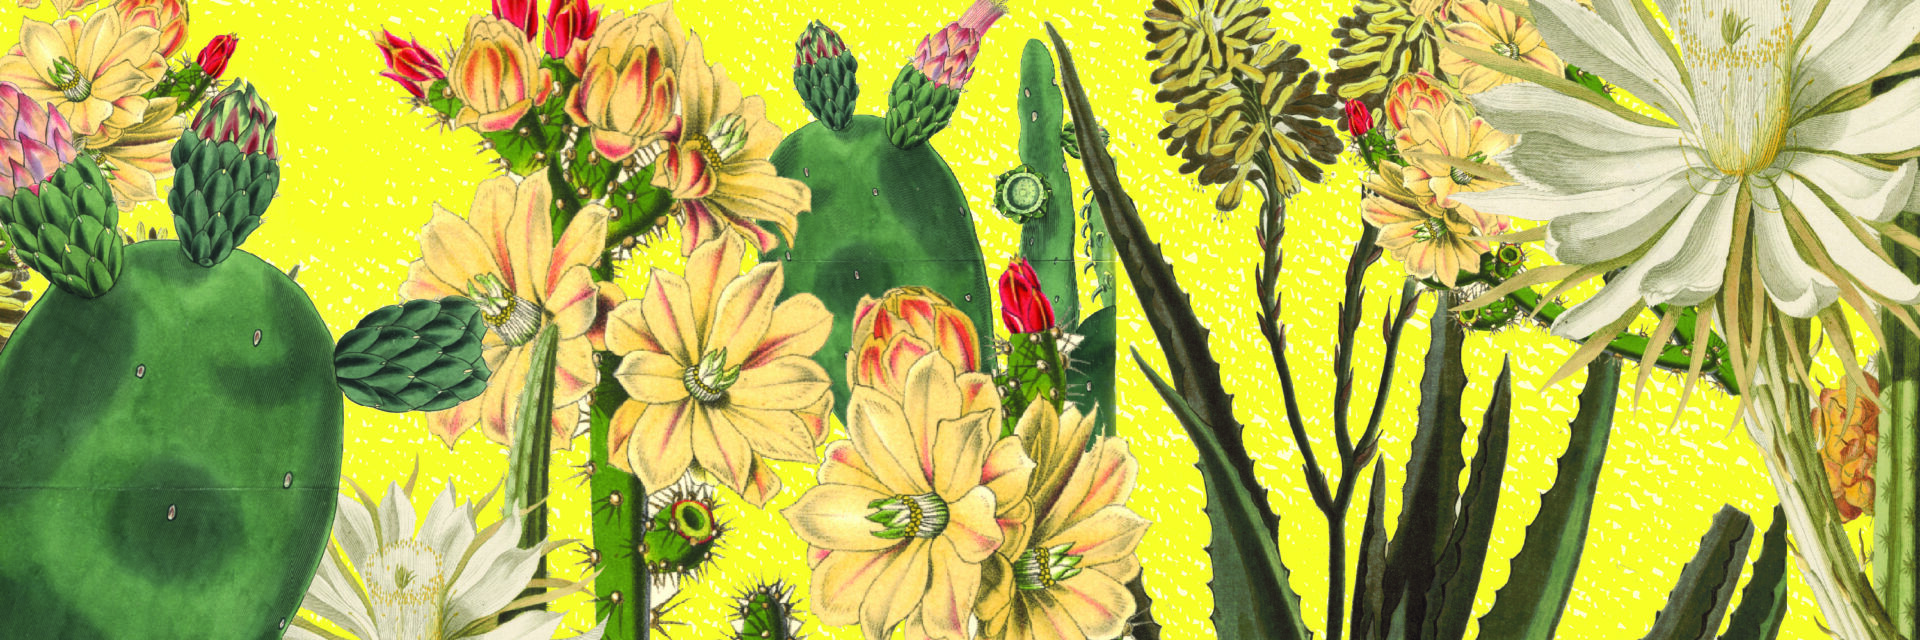 Cactus Symposium Artwork